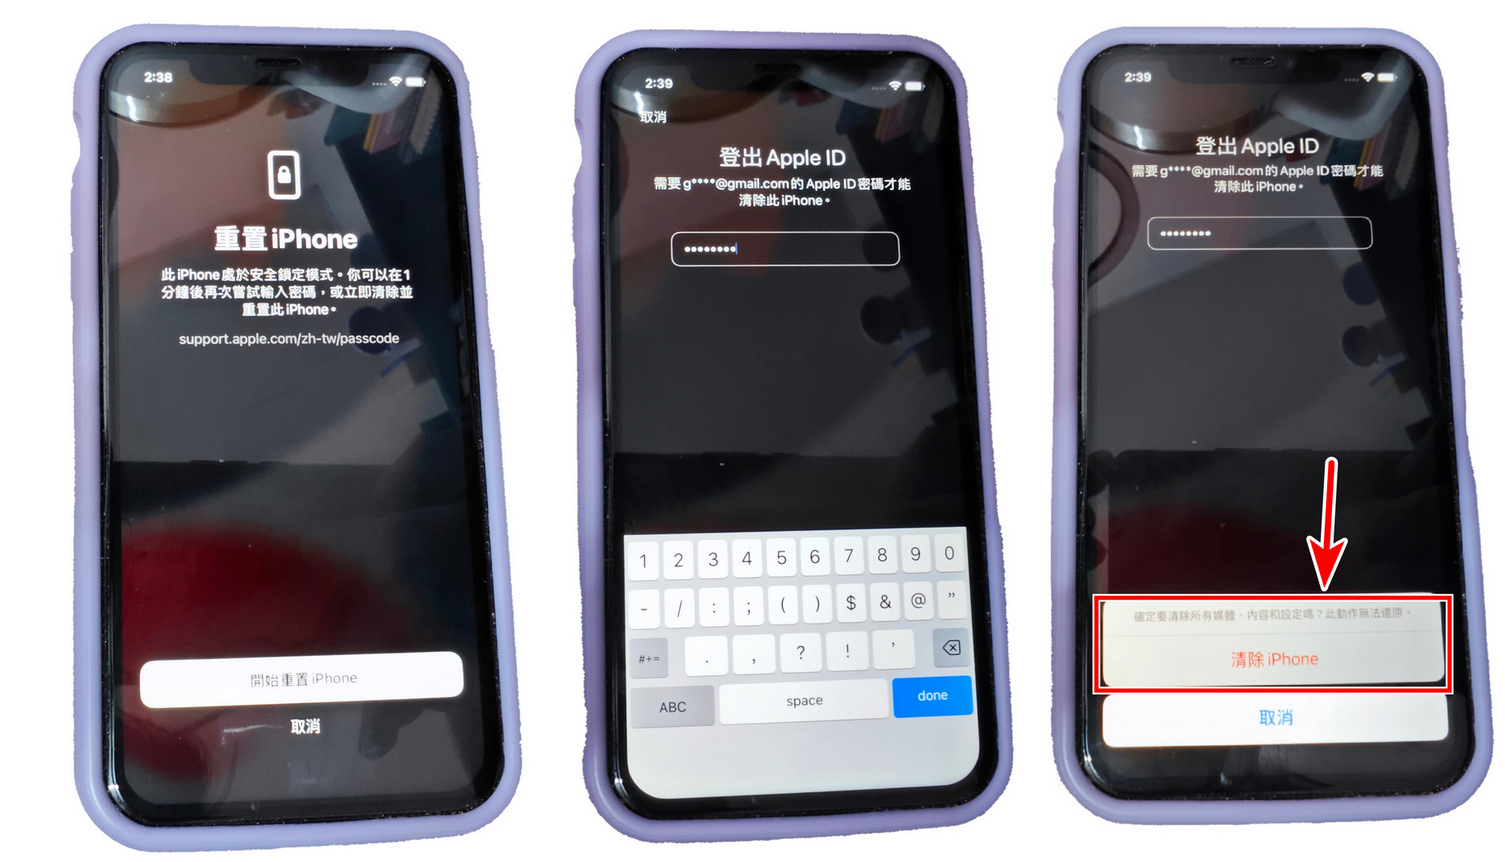 iphone忘記螢幕密碼怎麼辦，3種免電腦解鎖方法! - 已停用iPhone - 敗家達人推薦